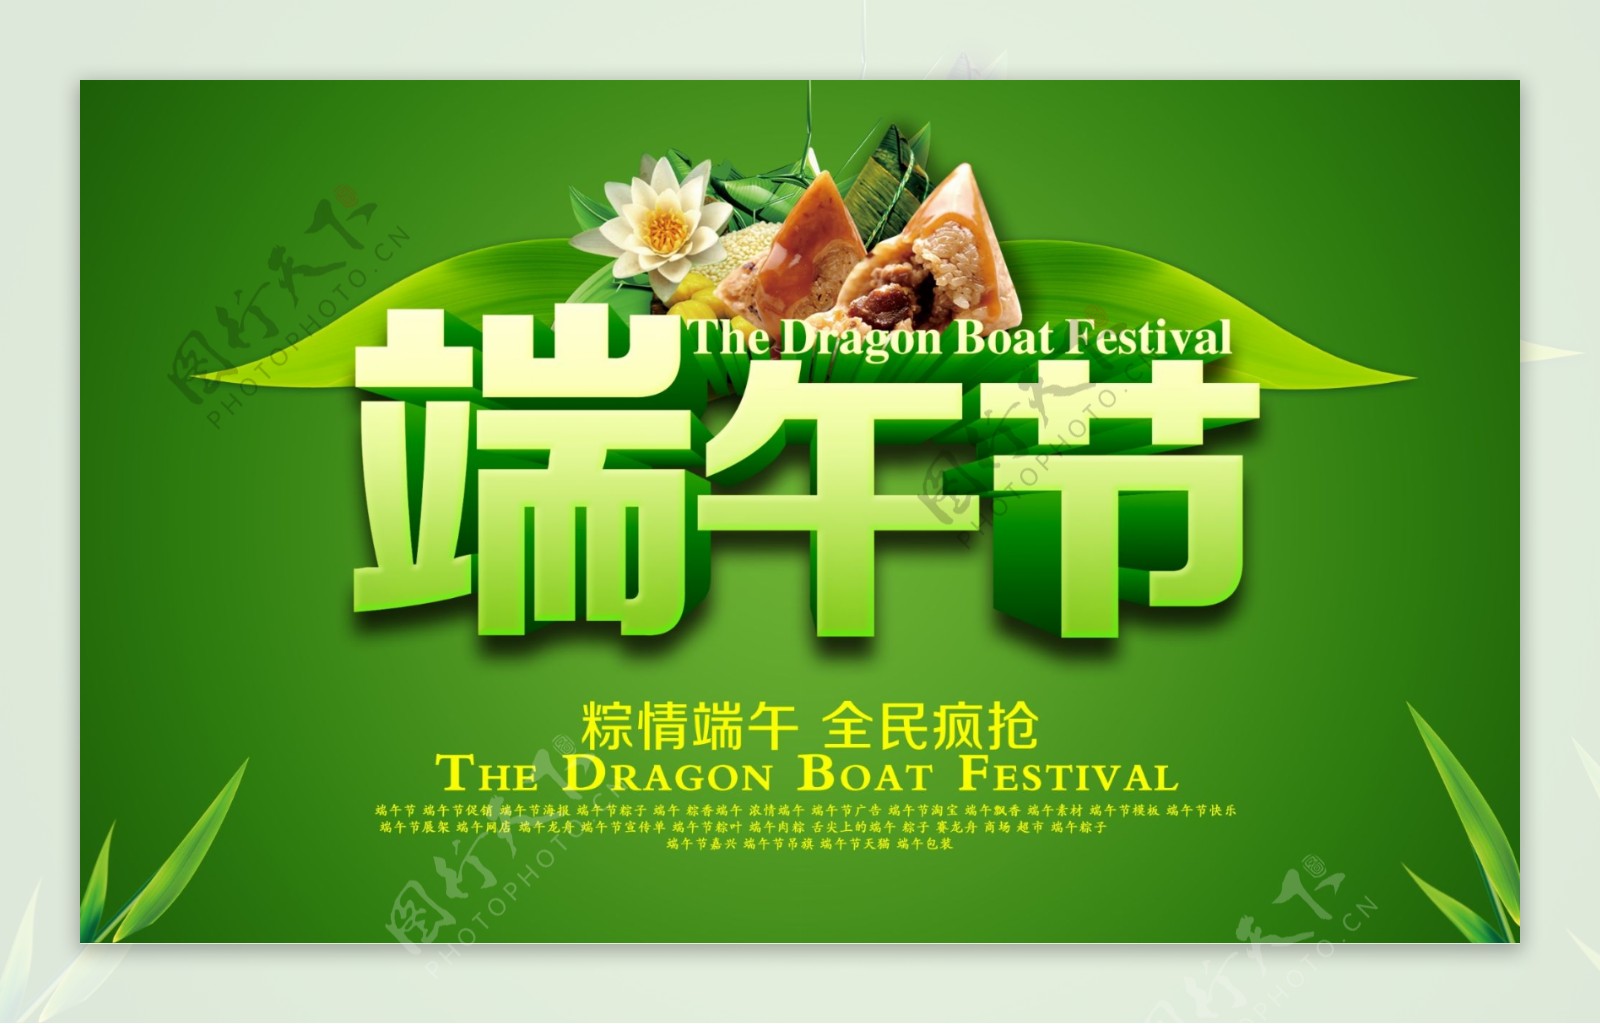 端午节粽子活动海报设计PSD素材